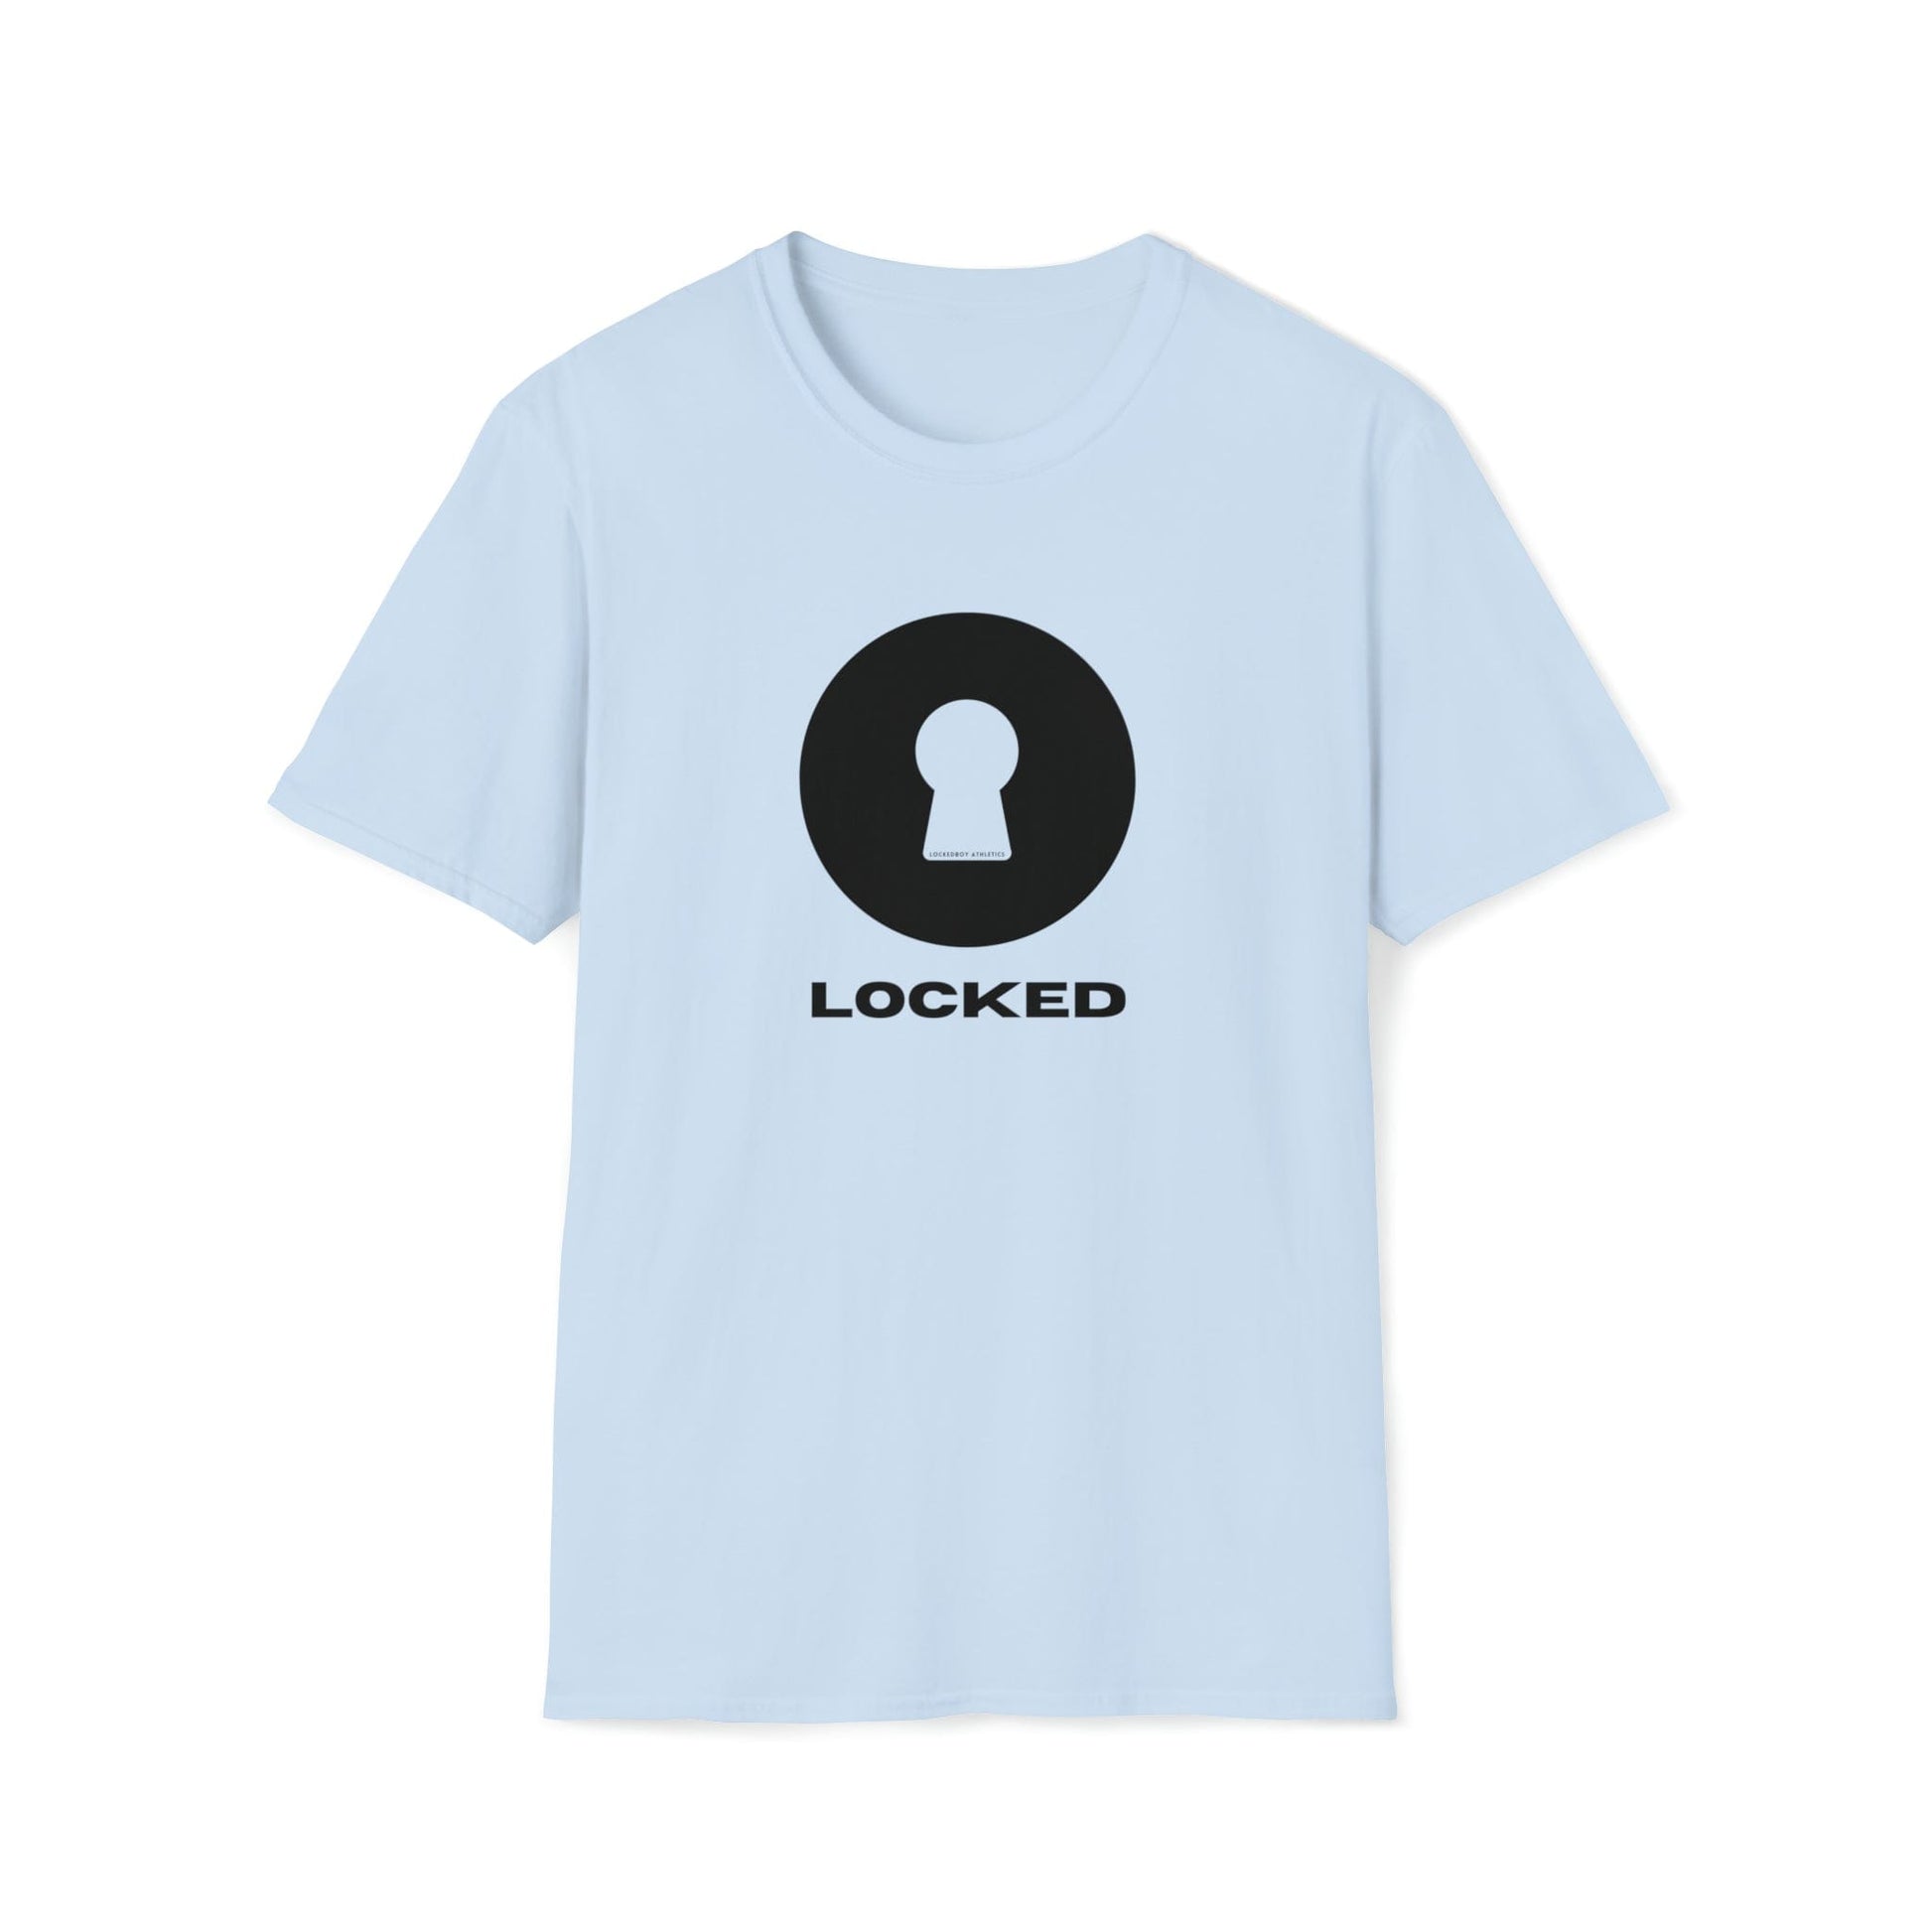 T-Shirt Light Blue / S Boldly Locked - Lockedboy Athletics Chastity Tshirt LEATHERDADDY BATOR